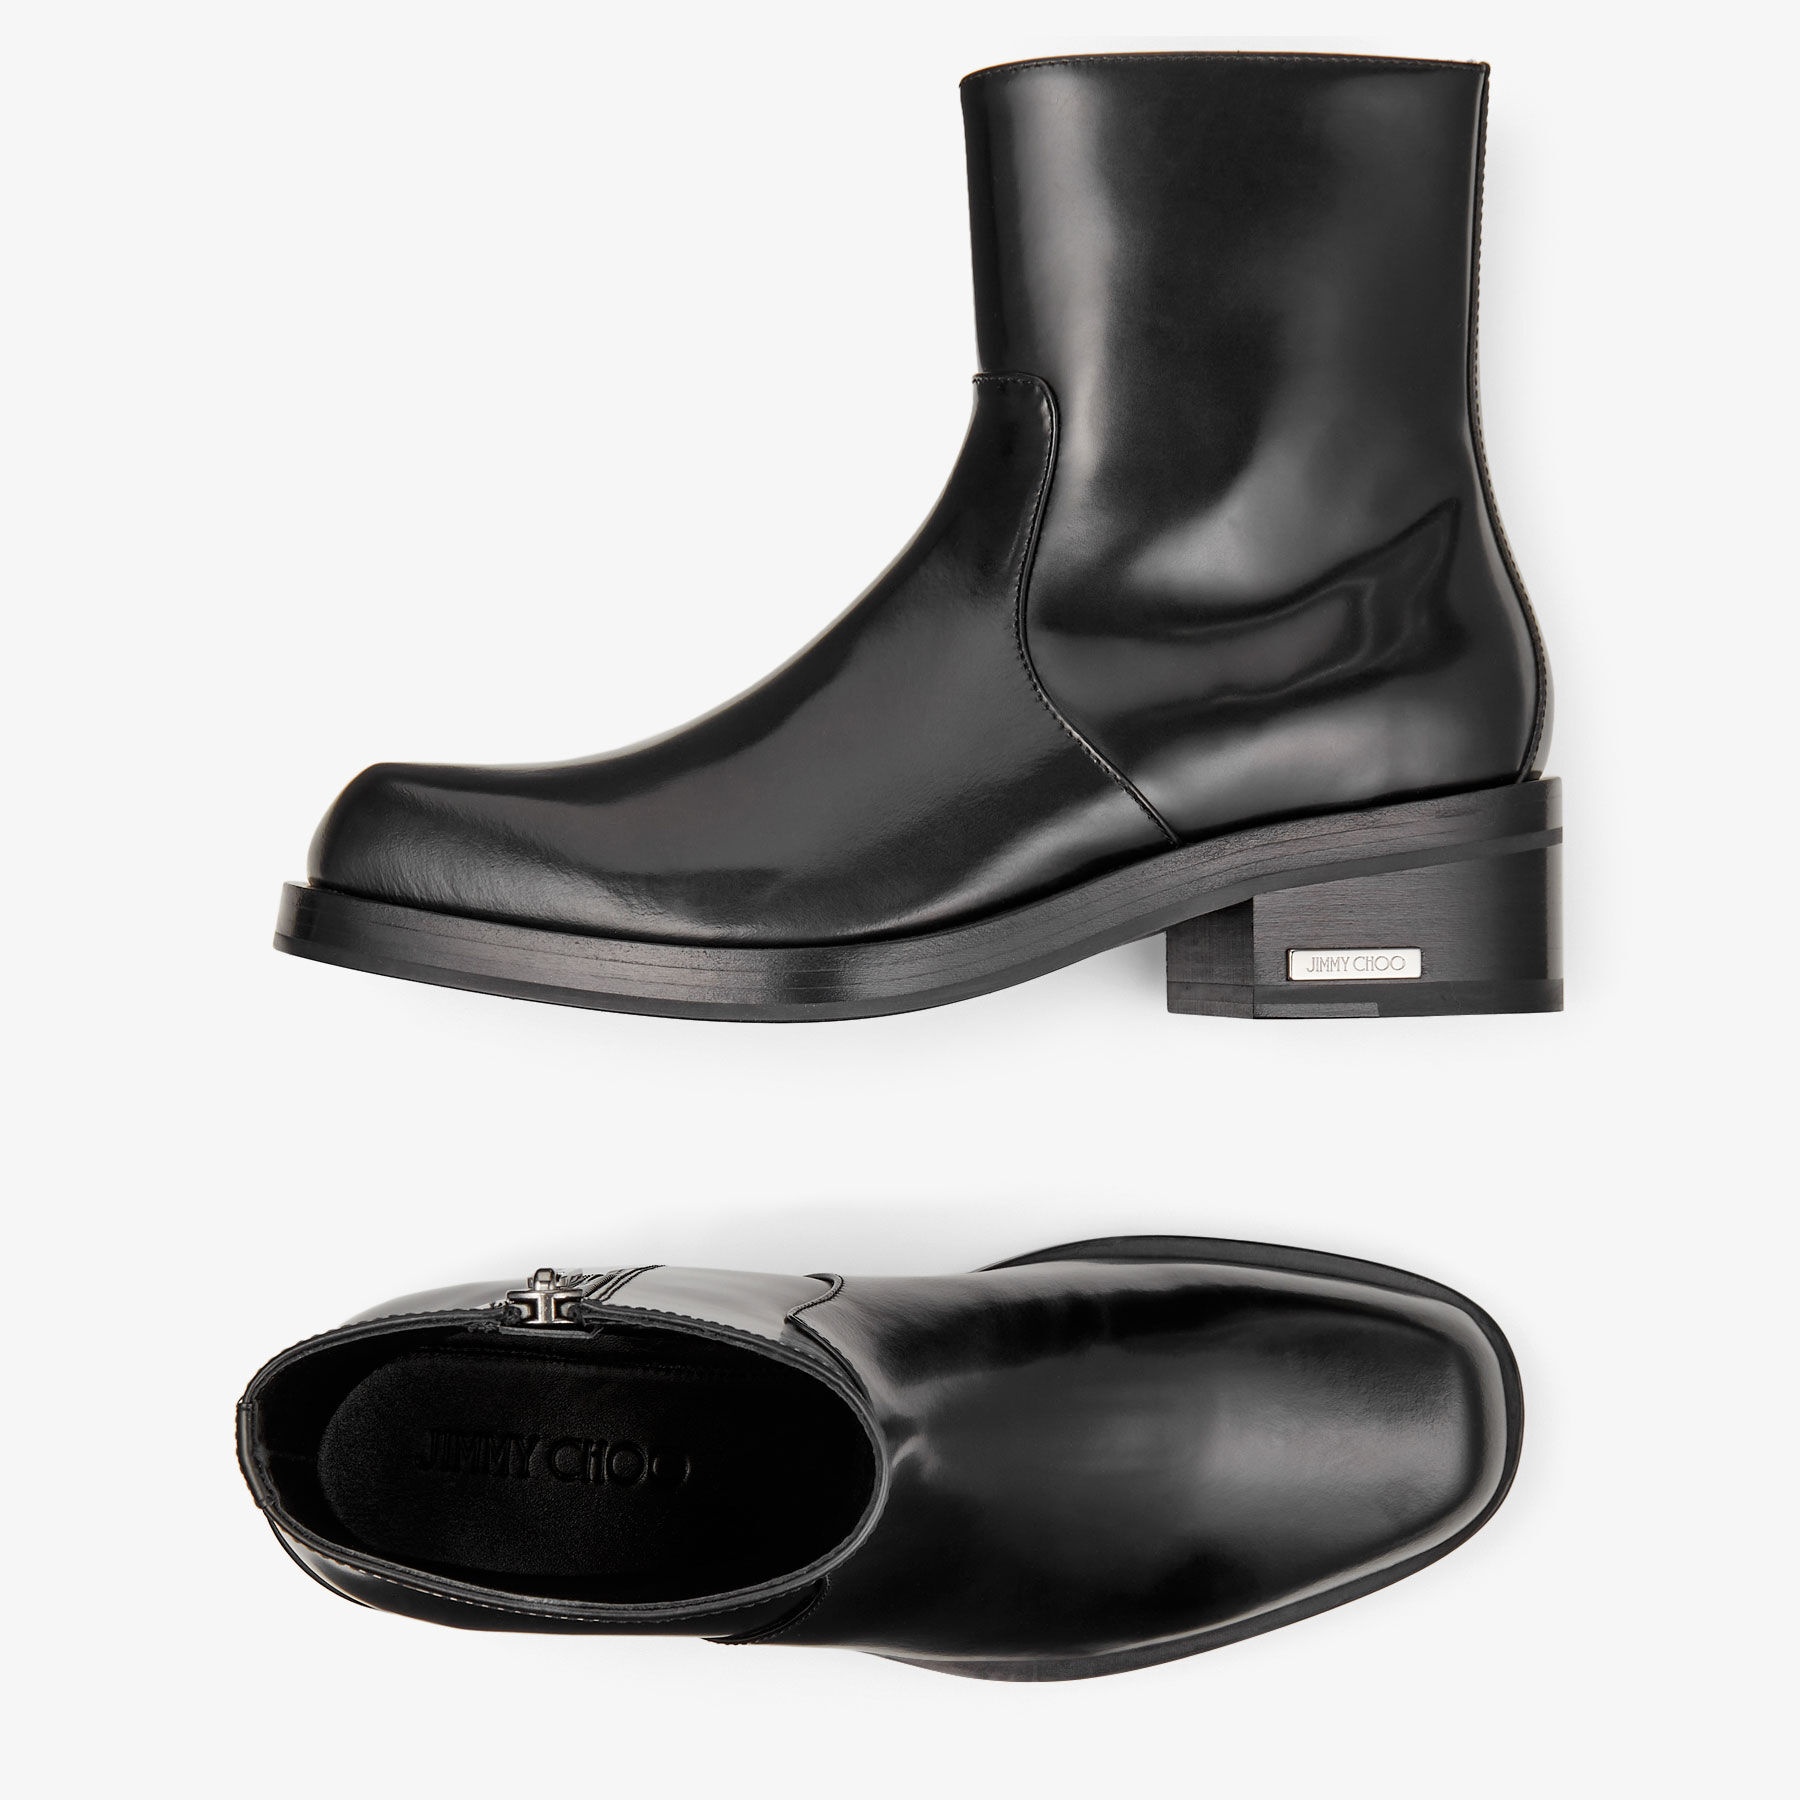 Elias Zip Boot
Black Calf Leather Zip Boots - 4